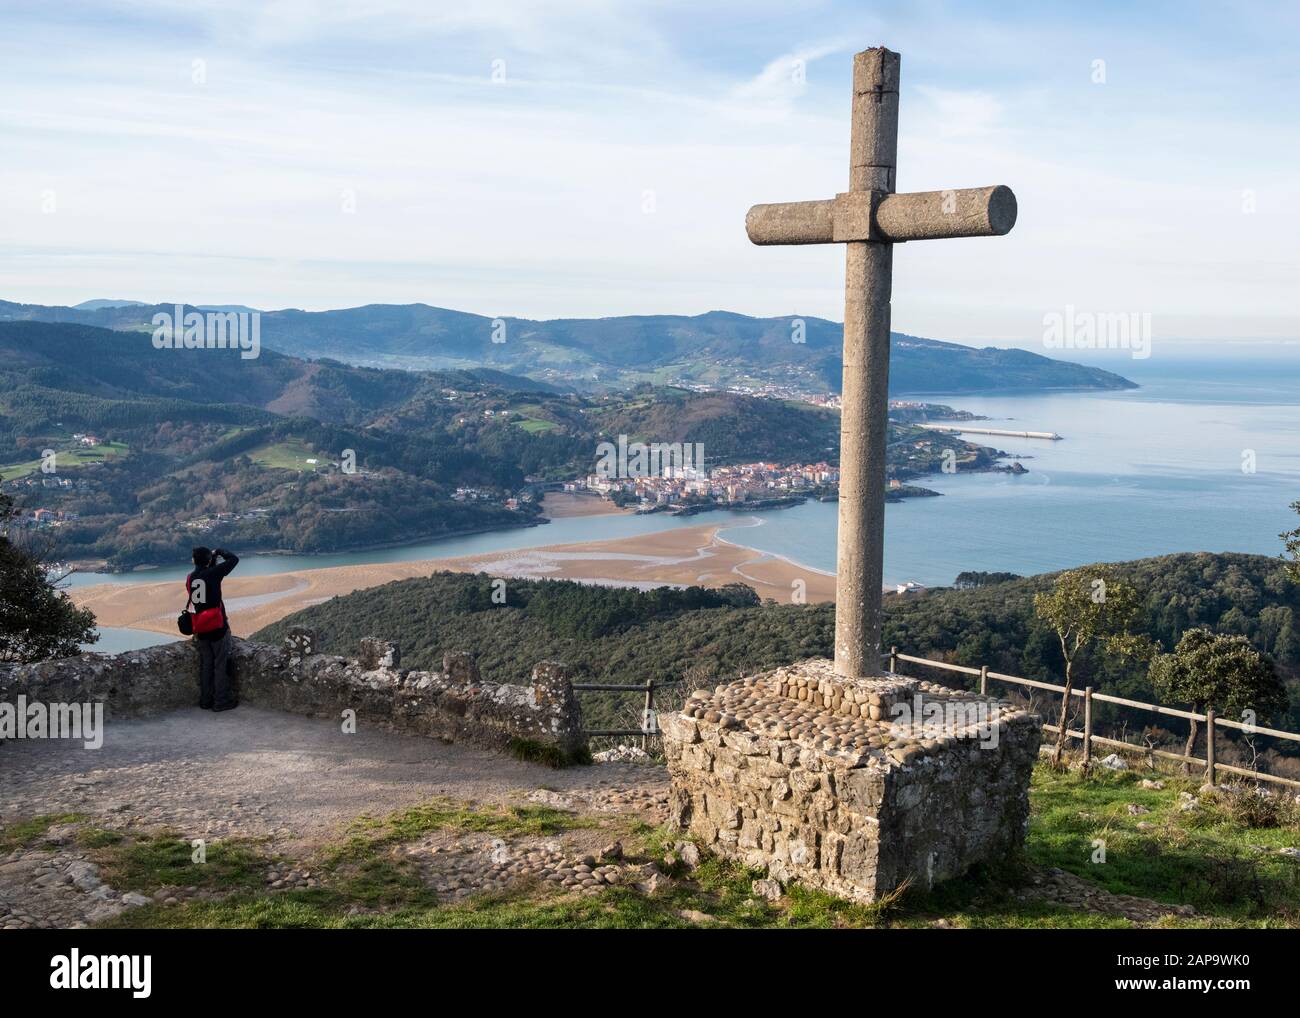 Randonneur photographiant l'estuaire d'Urdaibai du point de vue de San Pedro Atxarre à côté du monolithe croisé avec Mundaca et le cap Machicacho (Pays basque, Espagne) Banque D'Images